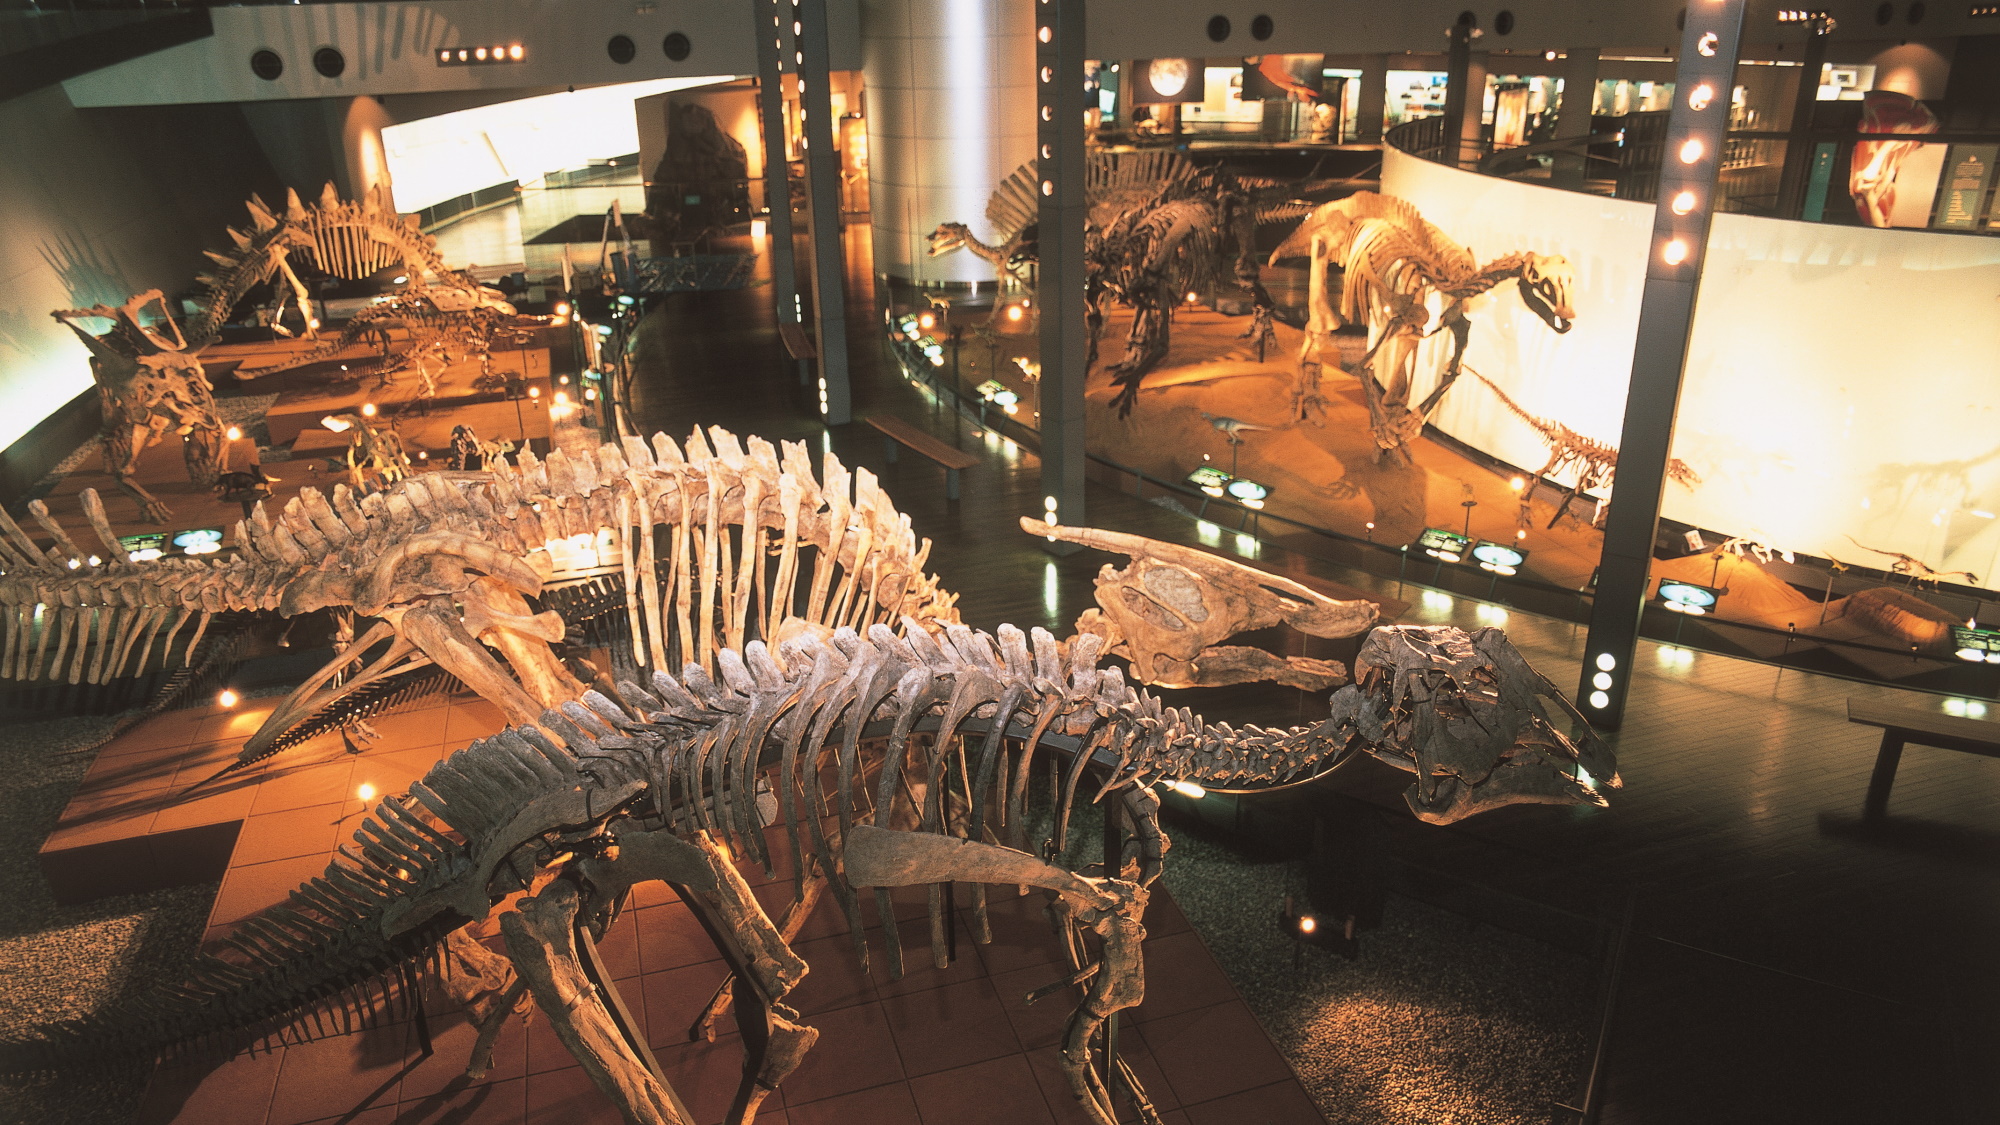 【福井県立恐竜博物館】世界三大恐竜博物館と称され、日本を代表する恐竜博物館です。